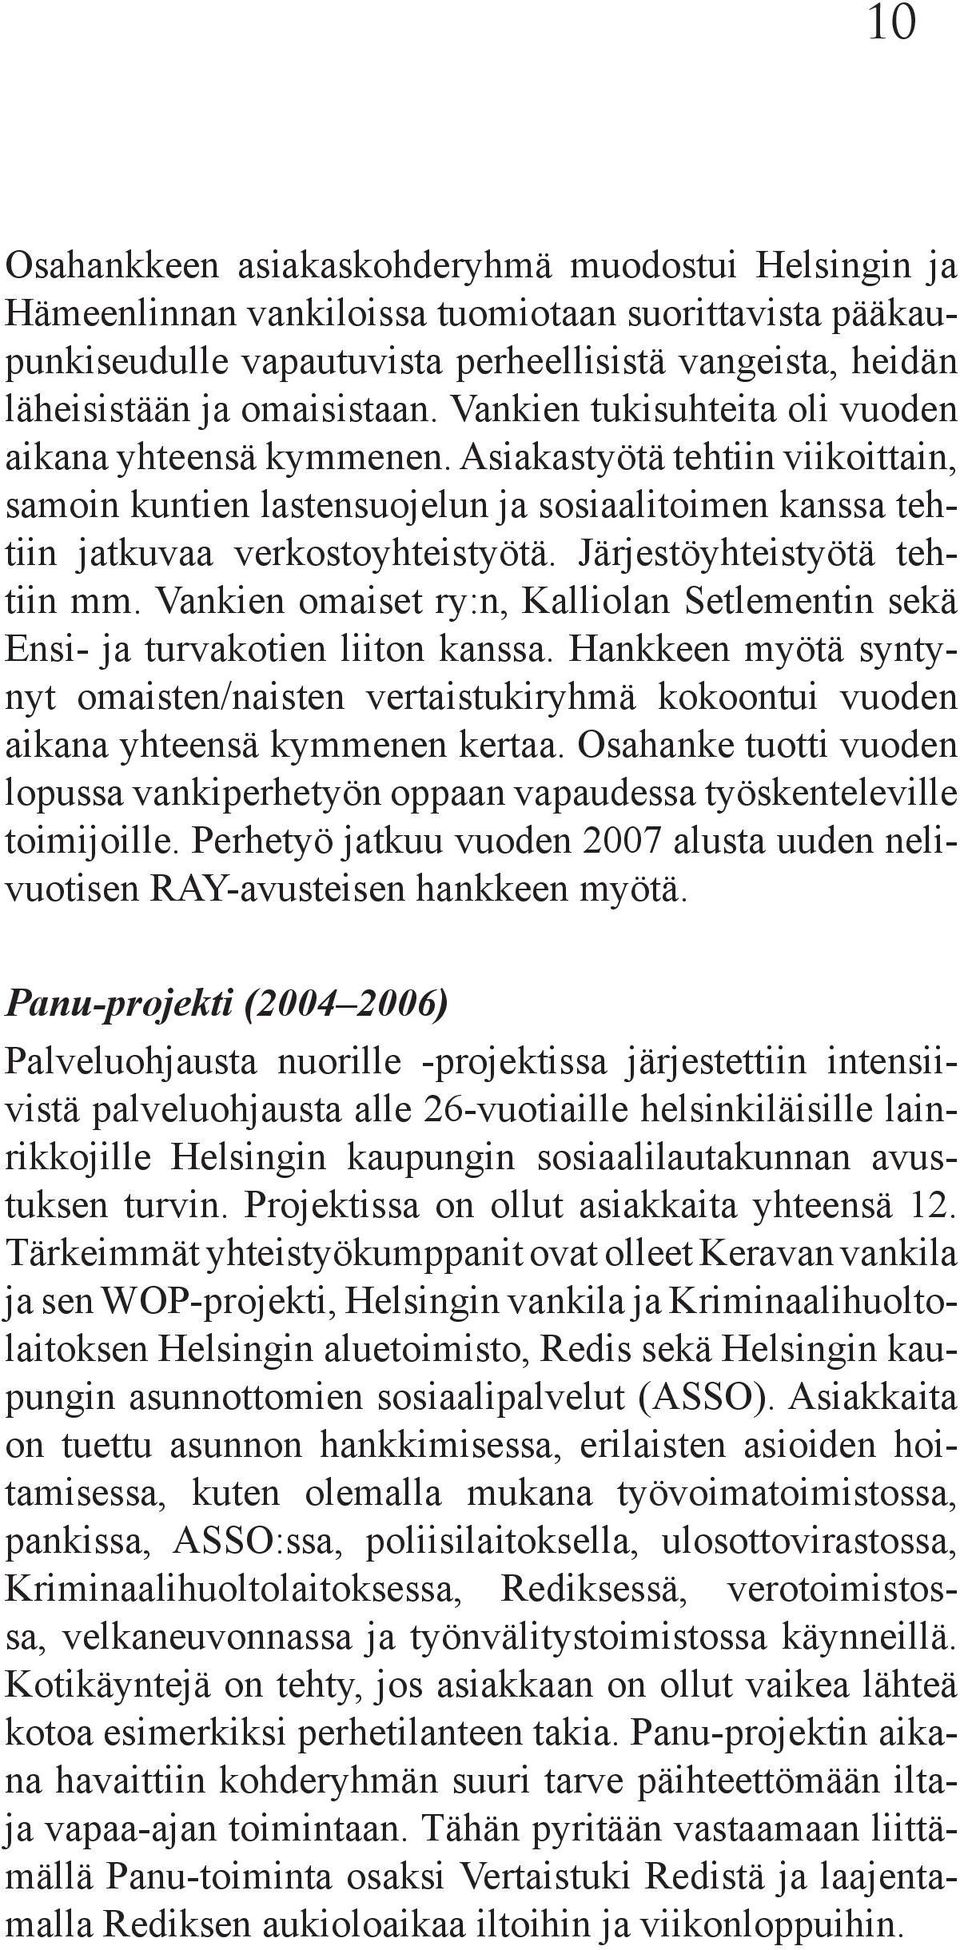 Järjestöyhteistyötä tehtiin mm. Vankien omaiset ry:n, Kalliolan Setlementin sekä Ensi- ja turvakotien liiton kanssa.